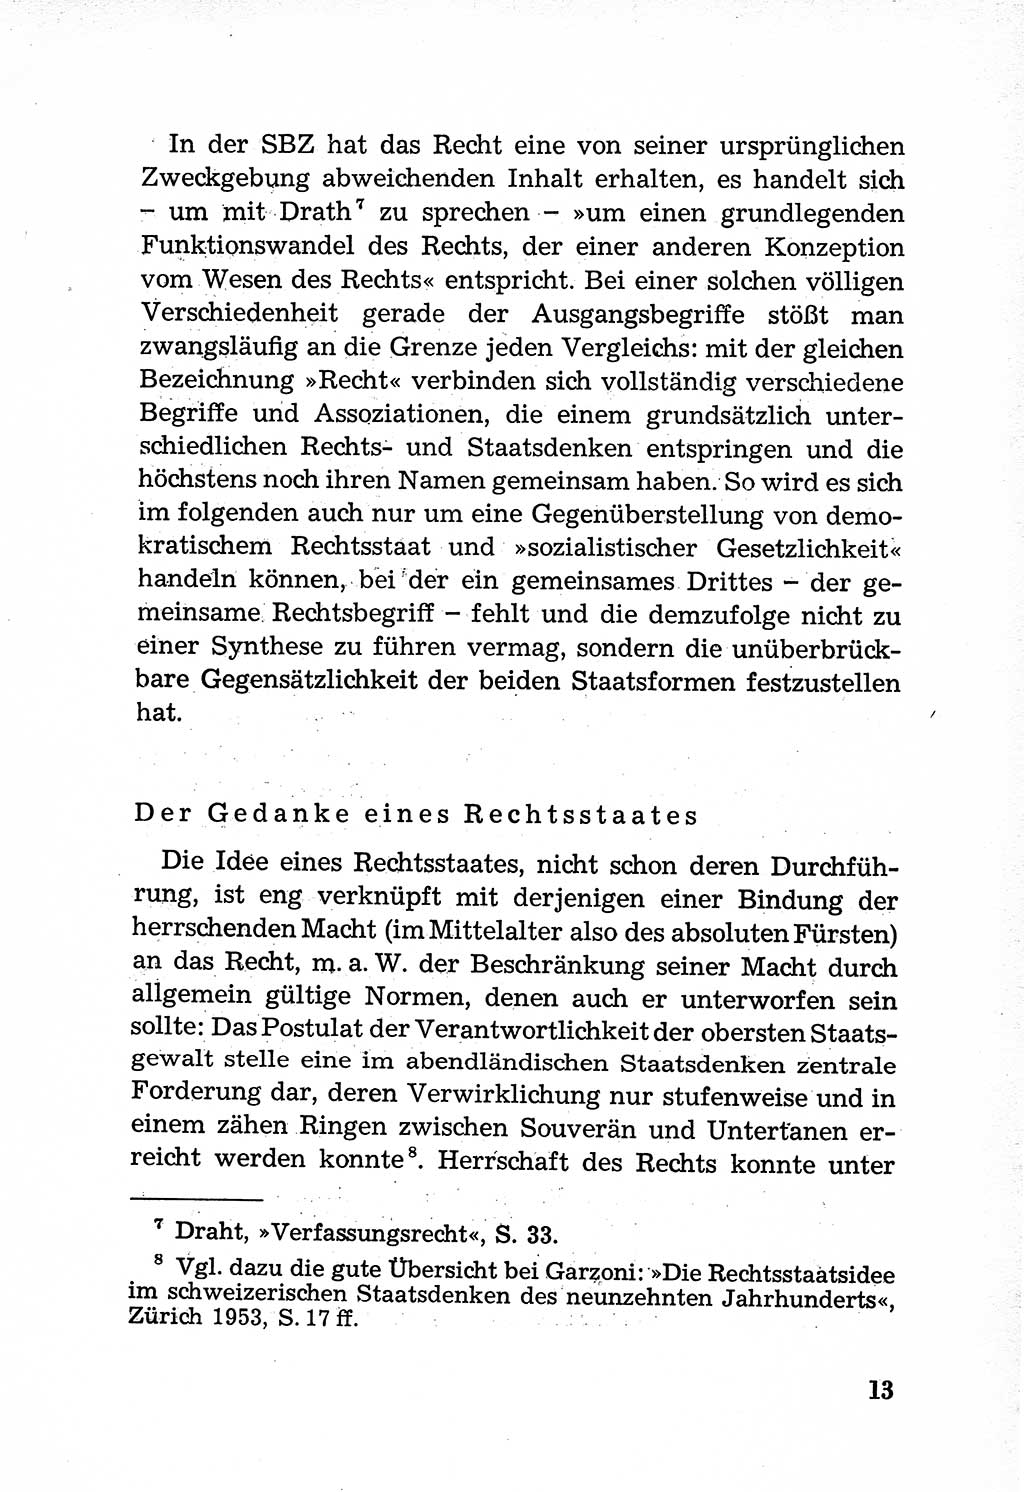 Rechtsstaat in zweierlei Hinsicht, Untersuchungsausschuß freiheitlicher Juristen (UfJ) [Bundesrepublik Deutschland (BRD)] 1956, Seite 13 (R.-St. UfJ BRD 1956, S. 13)